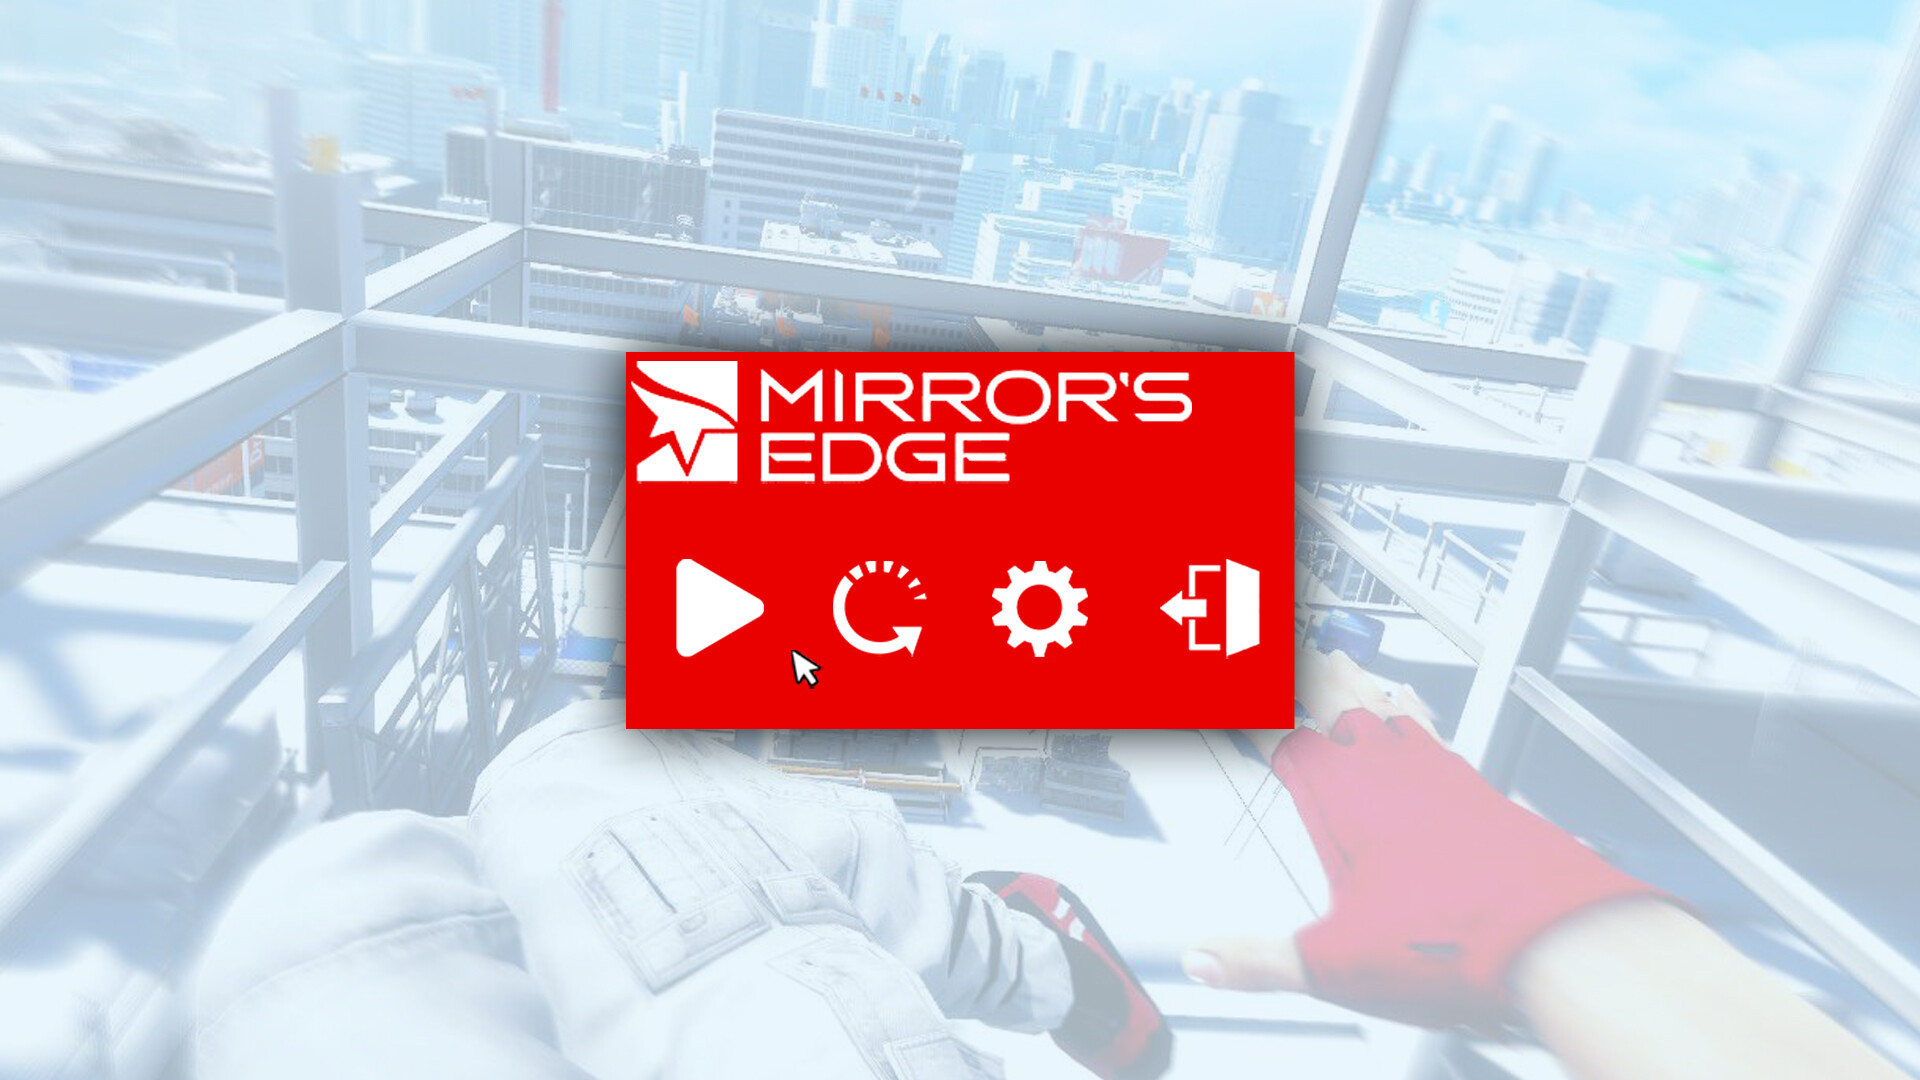 Como Baixar e Instalar - Mirror's Edge (PC) 